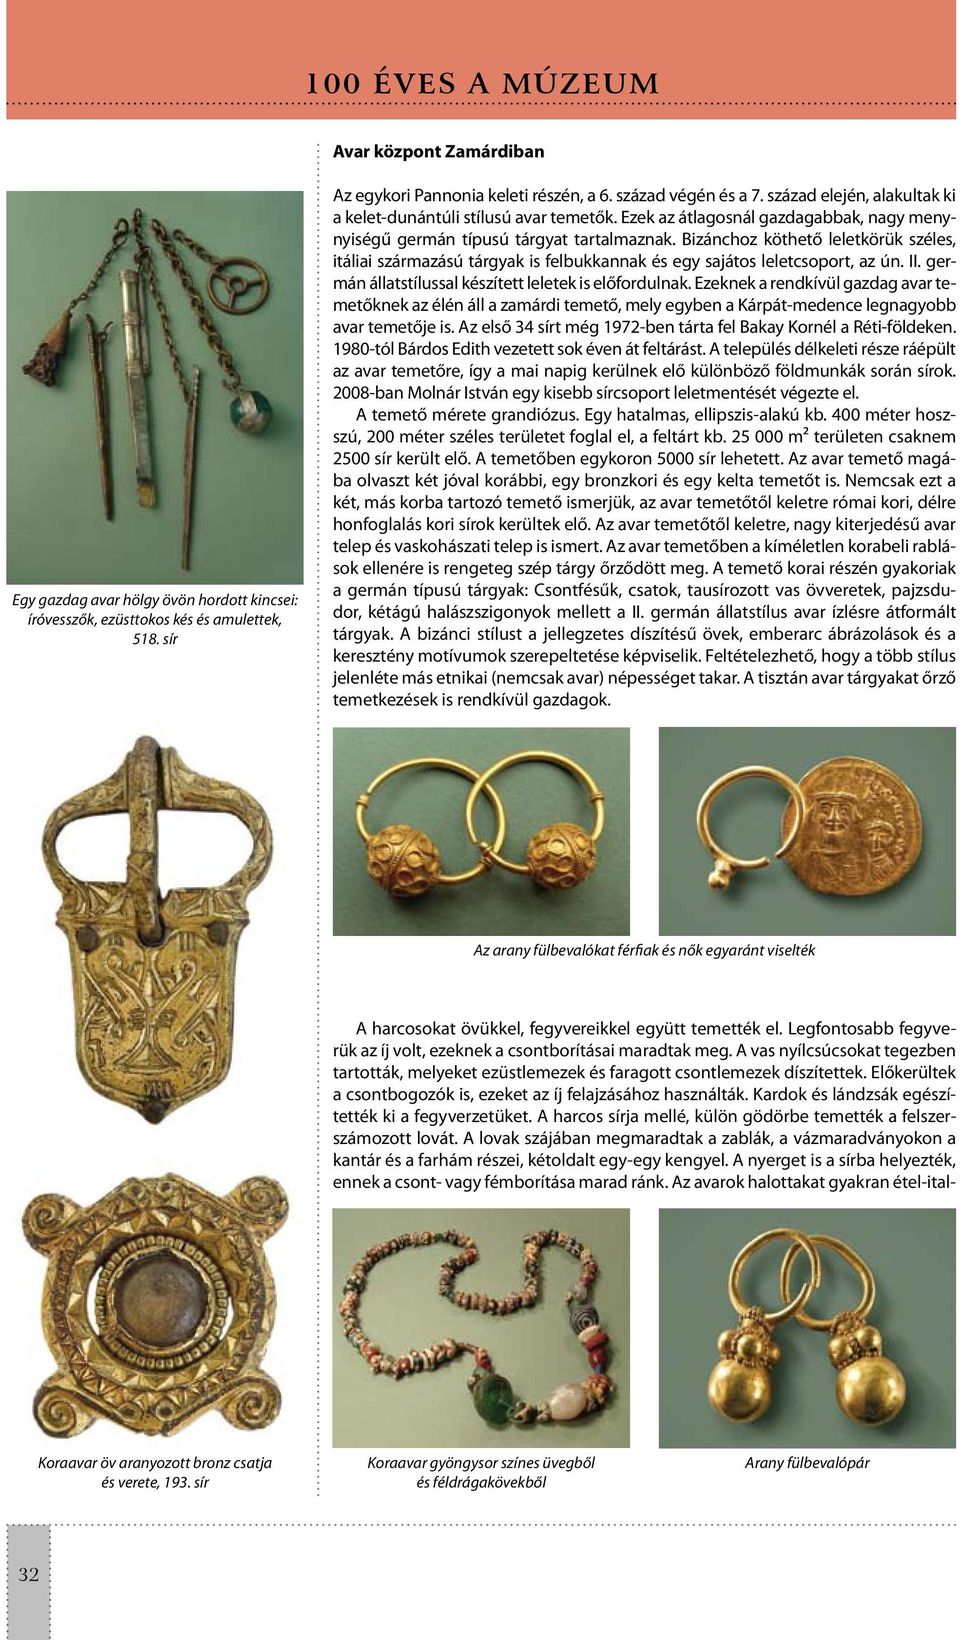 Bizánchoz köthető leletkörük széles, itáliai származású tárgyak is felbukkannak és egy sajátos leletcsoport, az ún. II. germán állatstílussal készített leletek is előfordulnak.